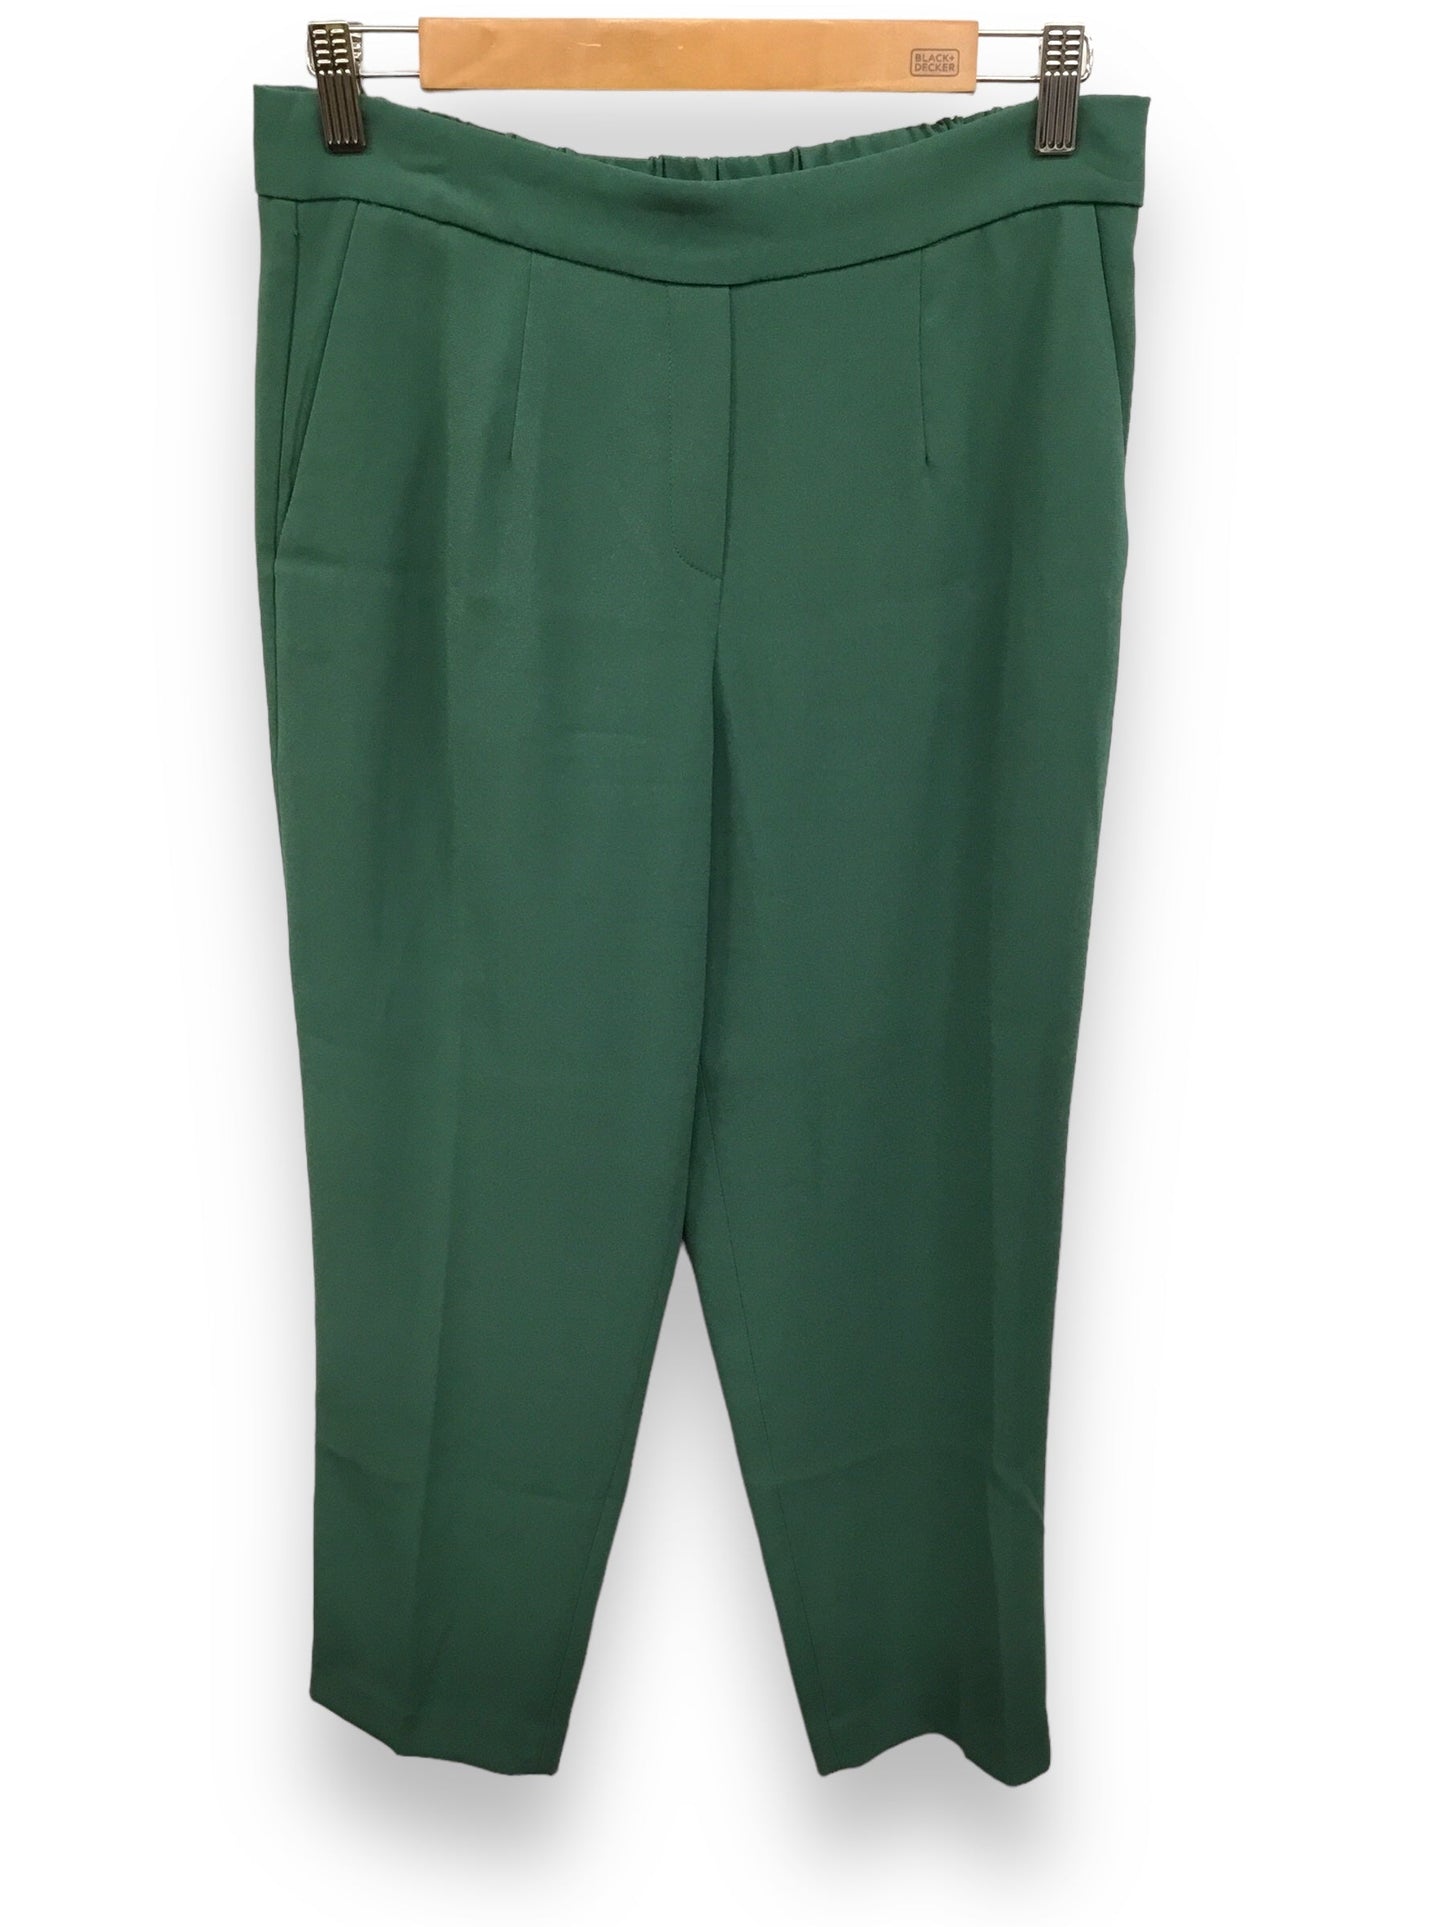 Green Pants Designer Babaton, Size 8